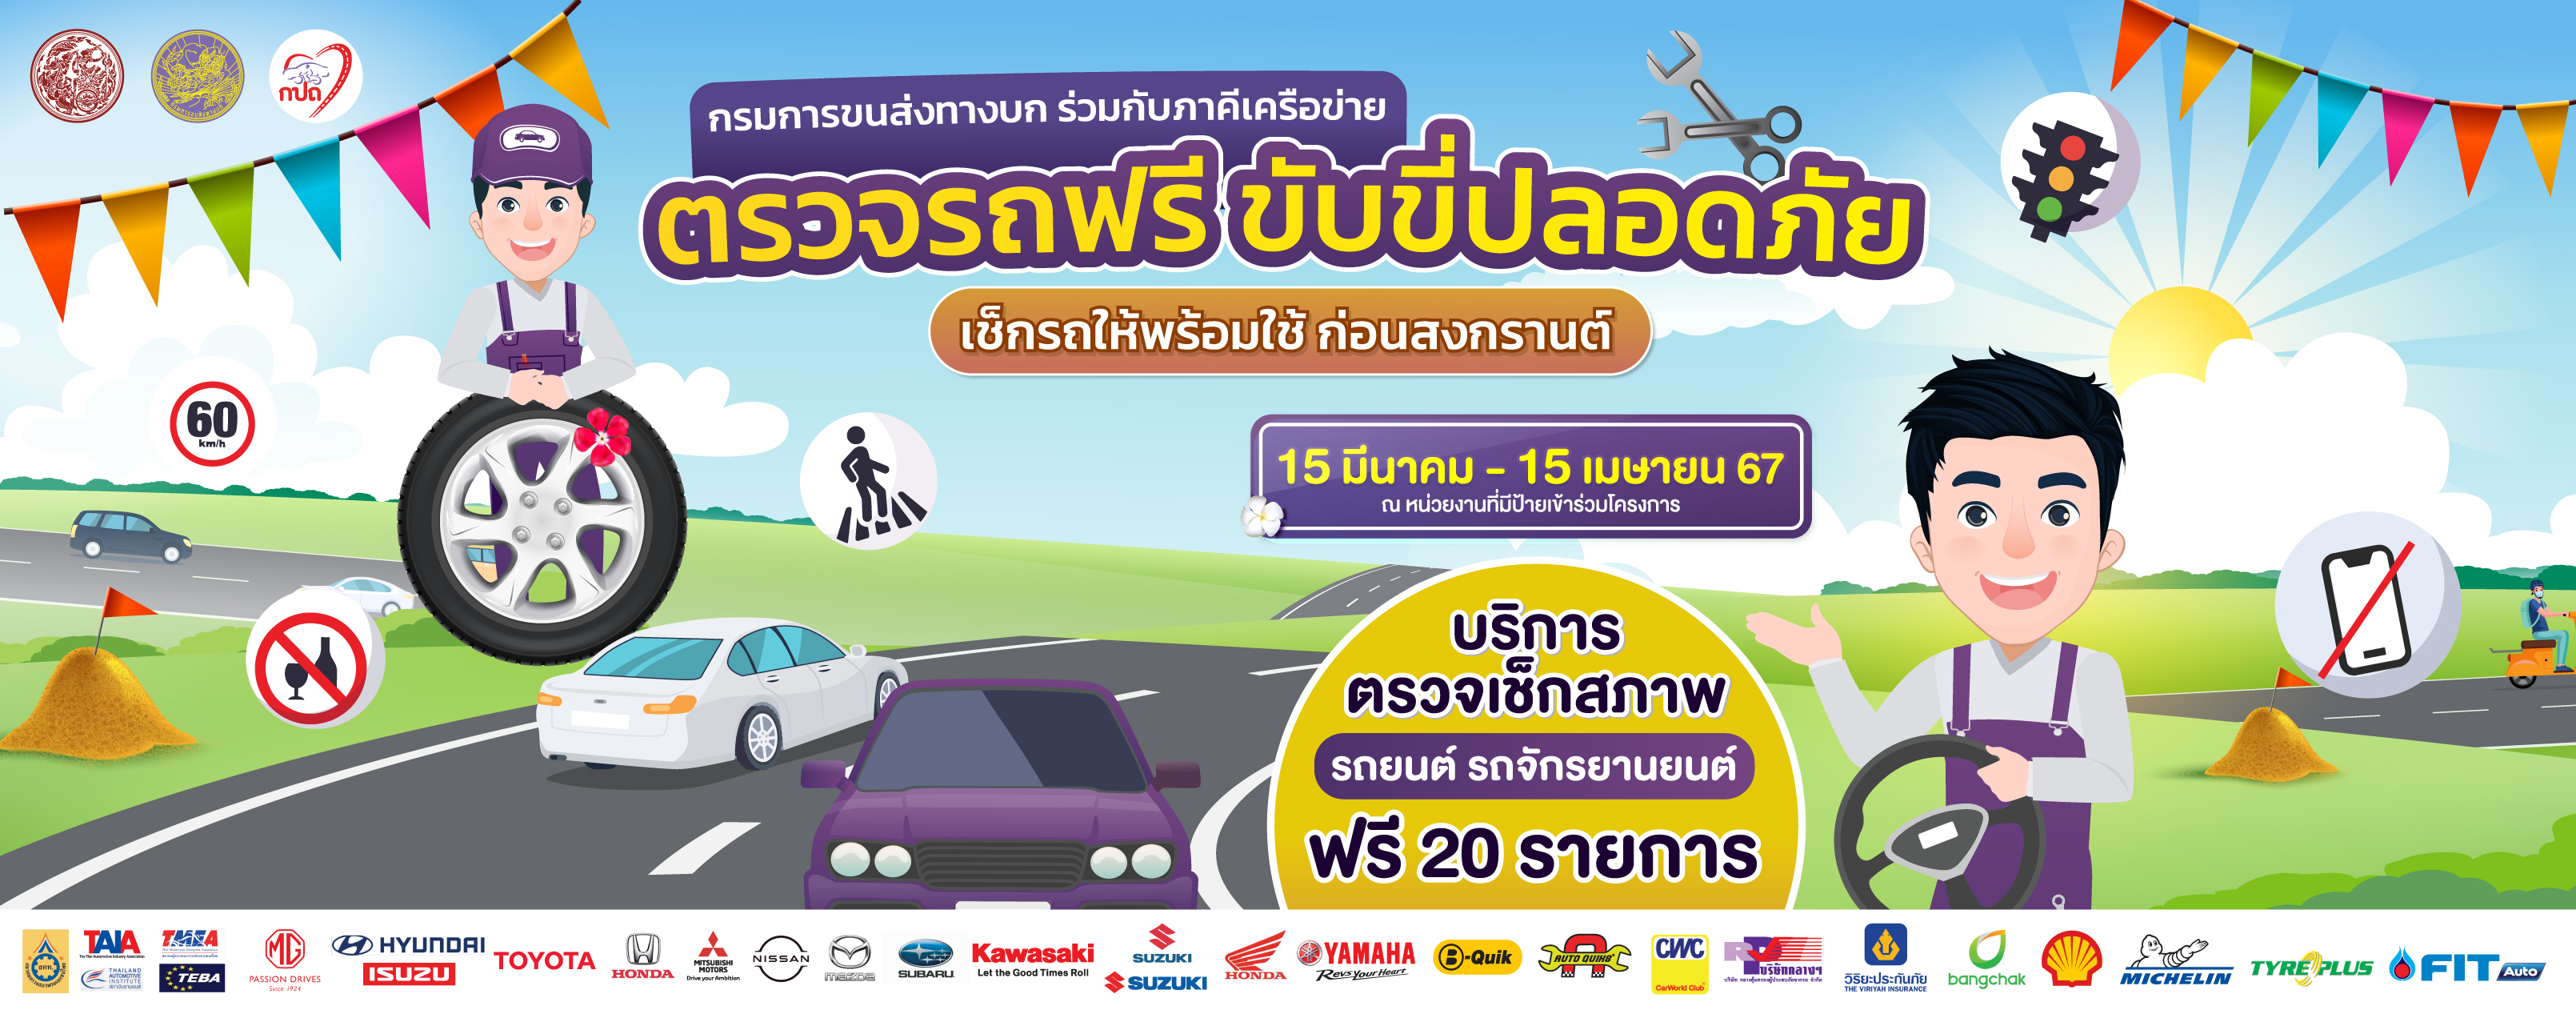 สำนักงานขนส่งจังหวัดนครสวรรค์ร่วมกับภาคีเครือข่ายเปิดให้บริการประชาชนนำรถยนต์และรถจักรยานยนต์ไปตรวจสภาพฟรี เพื่อการขับขี่ปลอดภัยในช่วงเทศกาลสงกรานต์จนถึงวันที่ 15 เมษายนนี้